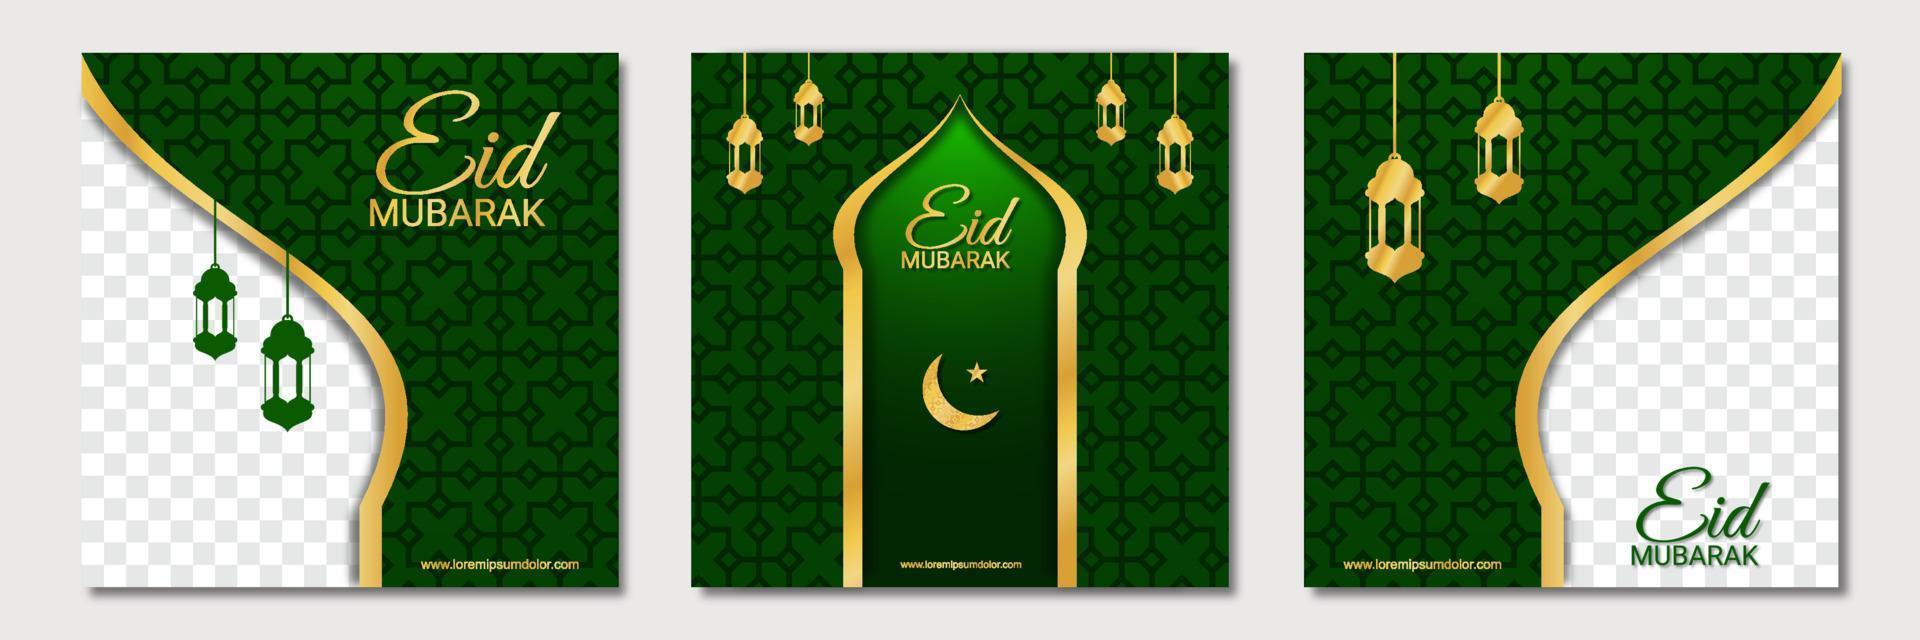 uppsättning ramadan fyrkantig banner malldesign med en plats för foton. lämplig för inlägg på sociala medier, instagram och webbannonser på internet. vektor illustration